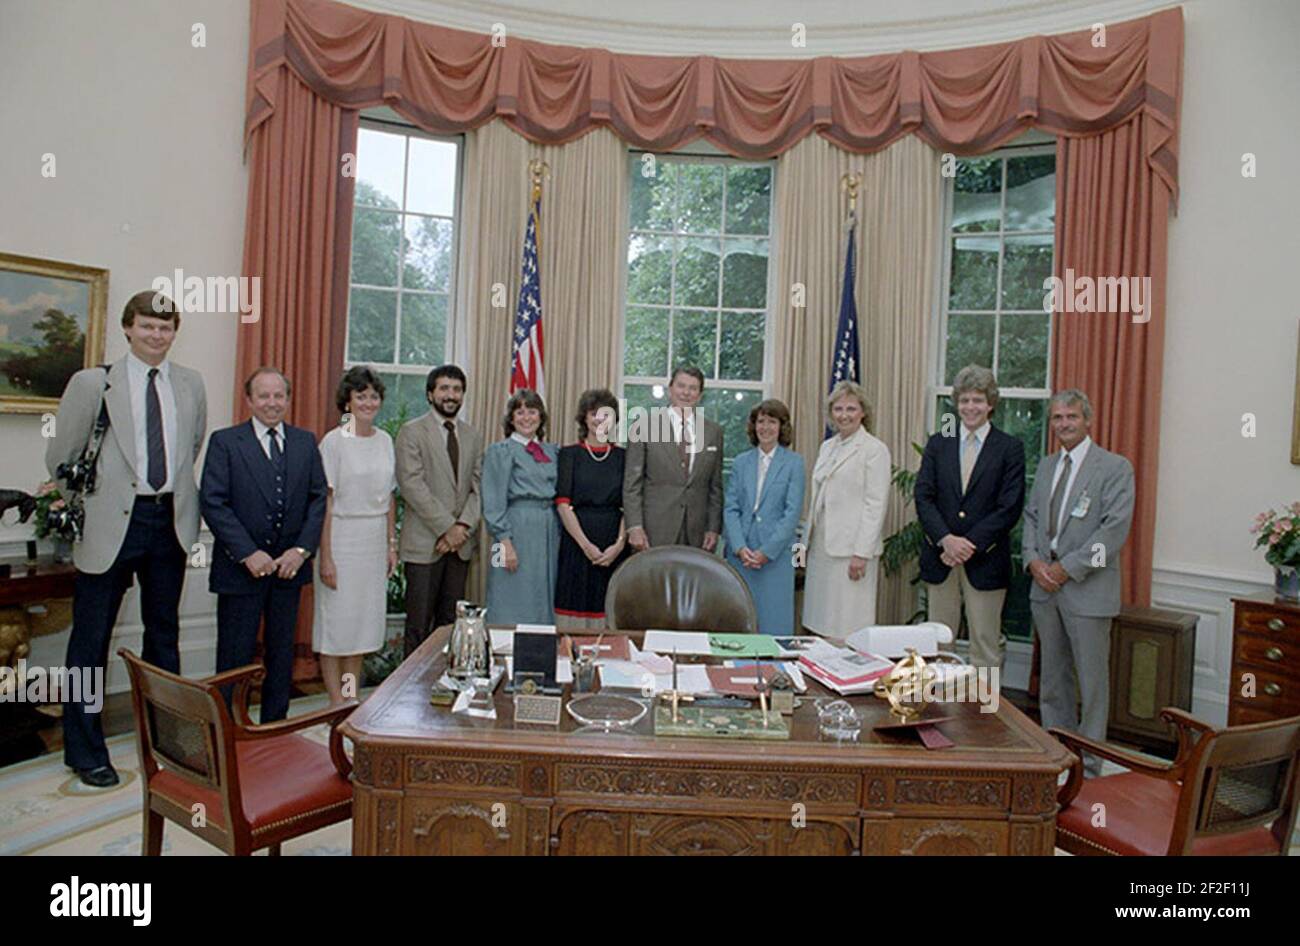 Präsident Reagan hat ein Foto op. Im ovalen Büro mit Personal des White House Photo Office, darunter die Fotografen Shaddix, Fitz-Patrick, Fackelman, Souza, Evans, Und Kightlinger 1983-06-21. Stockfoto